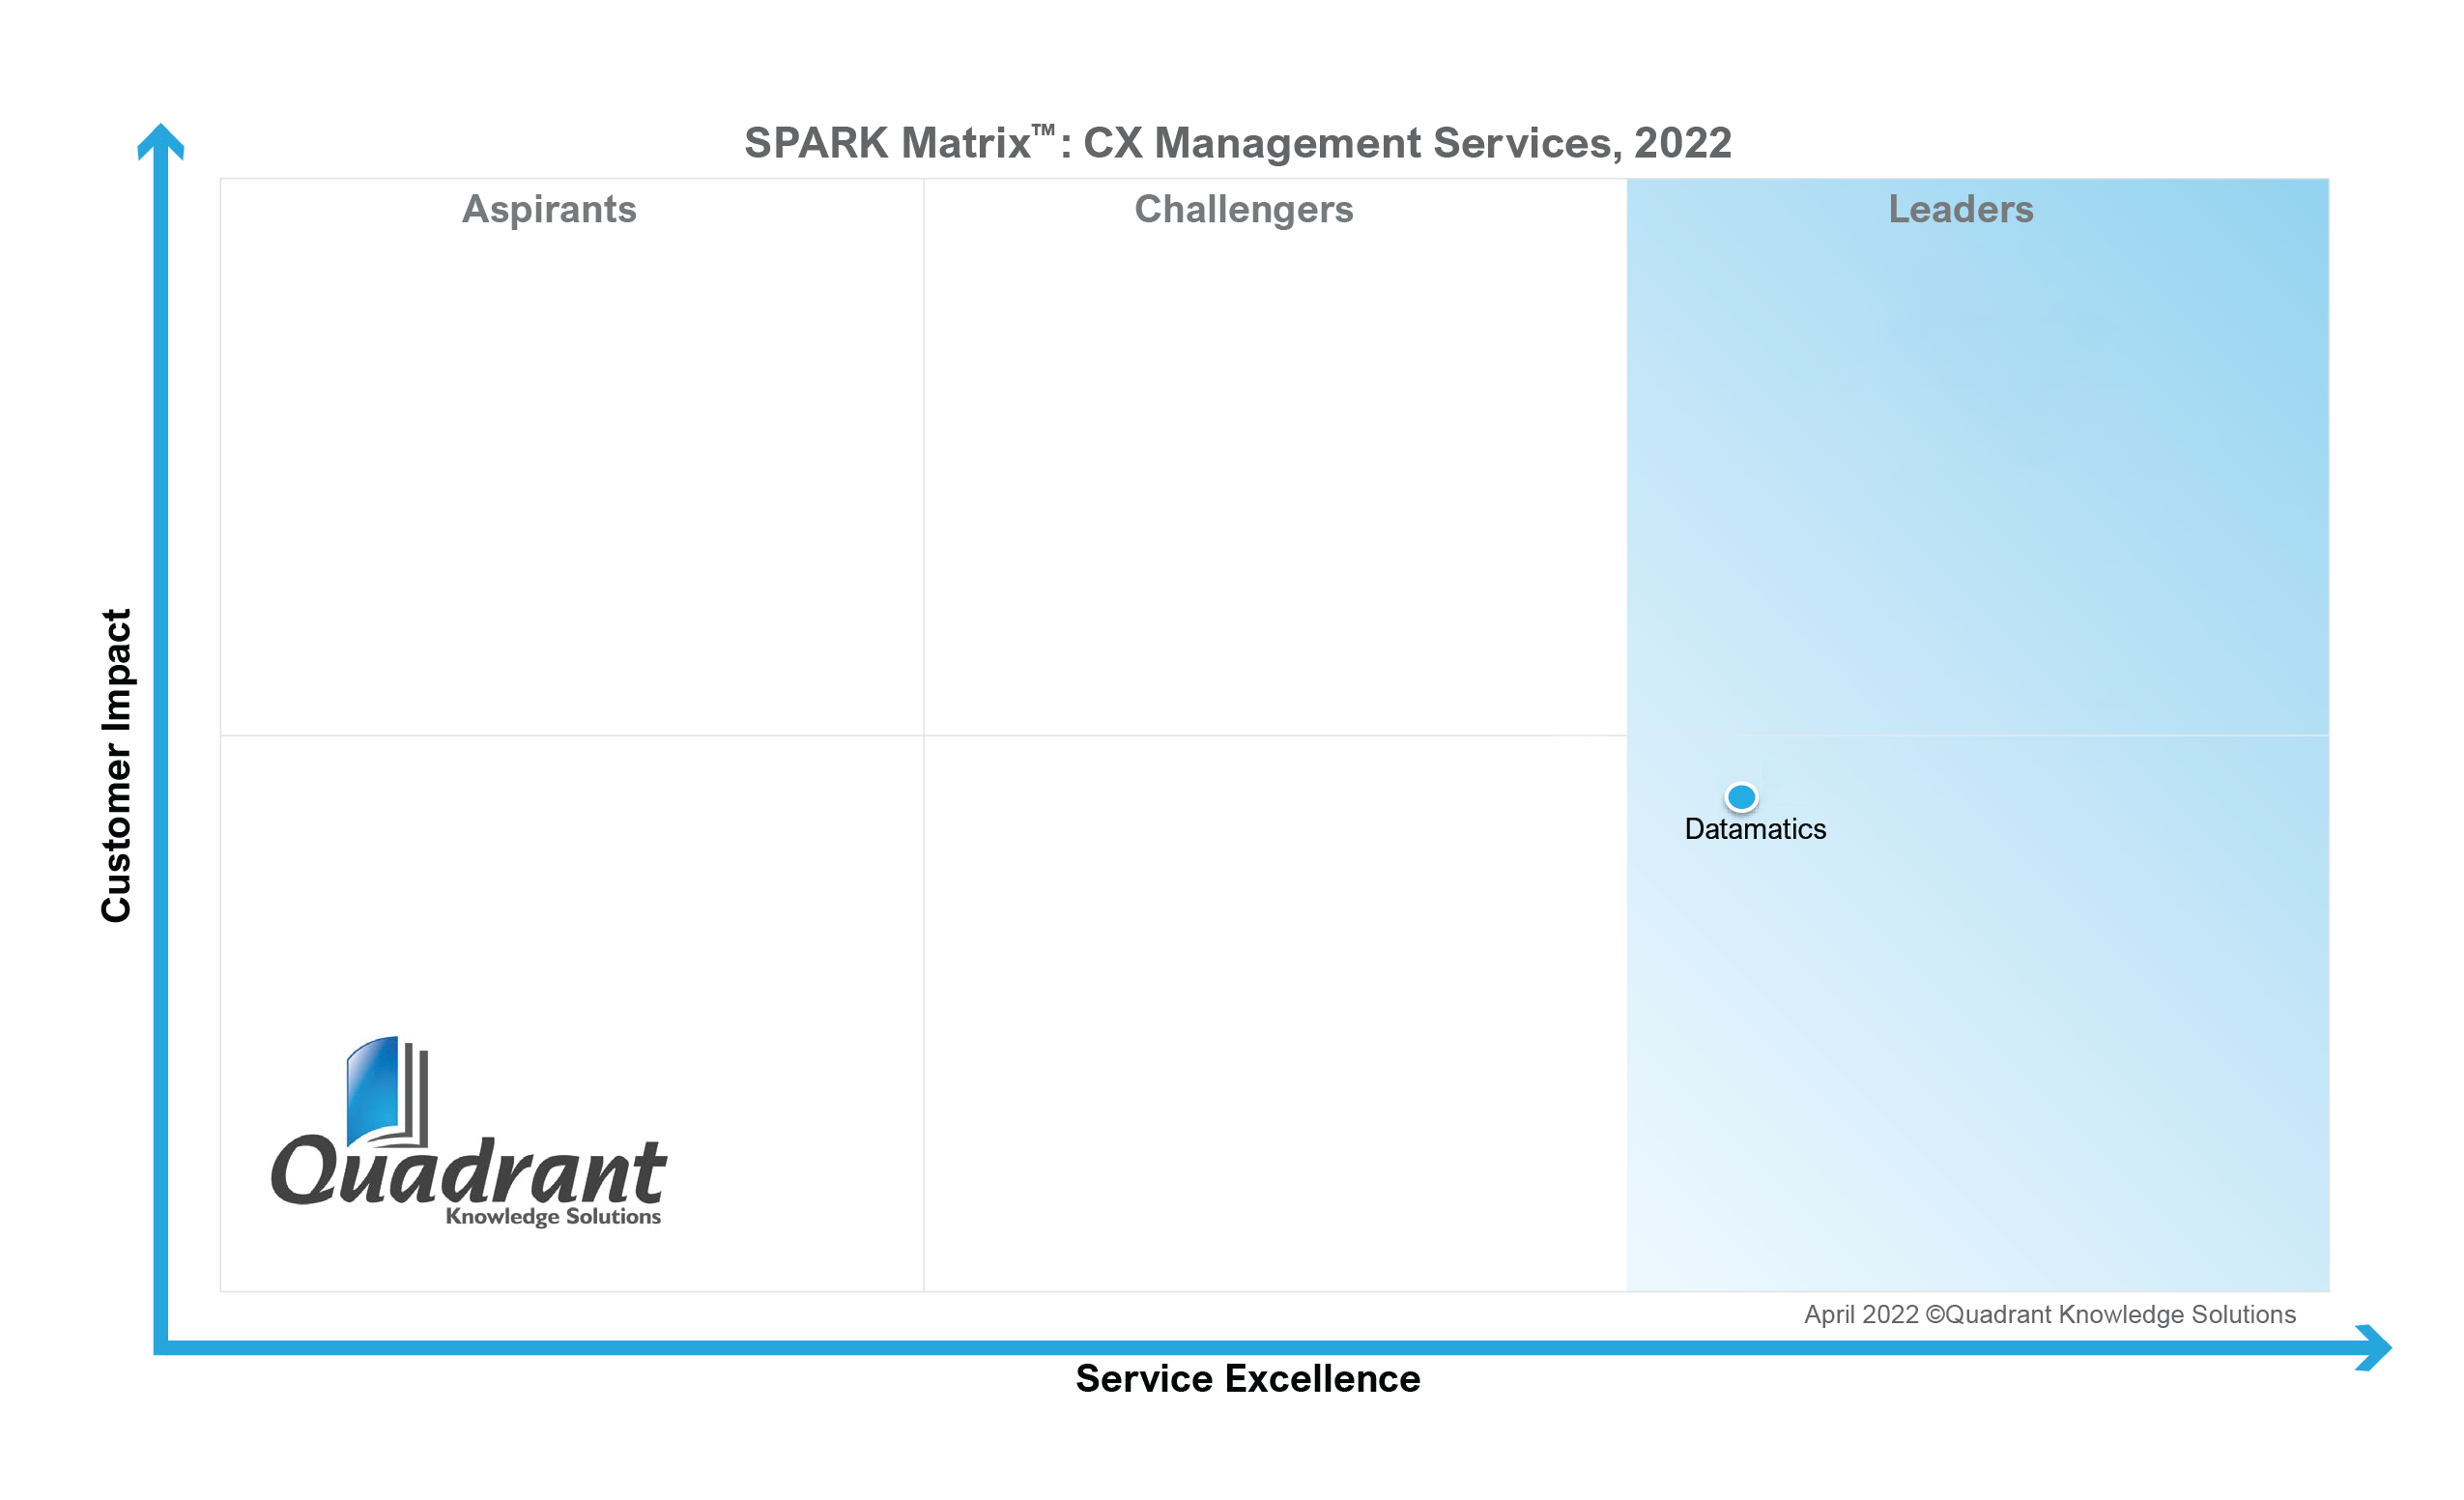 Spark Matrix CX Management Services 2022